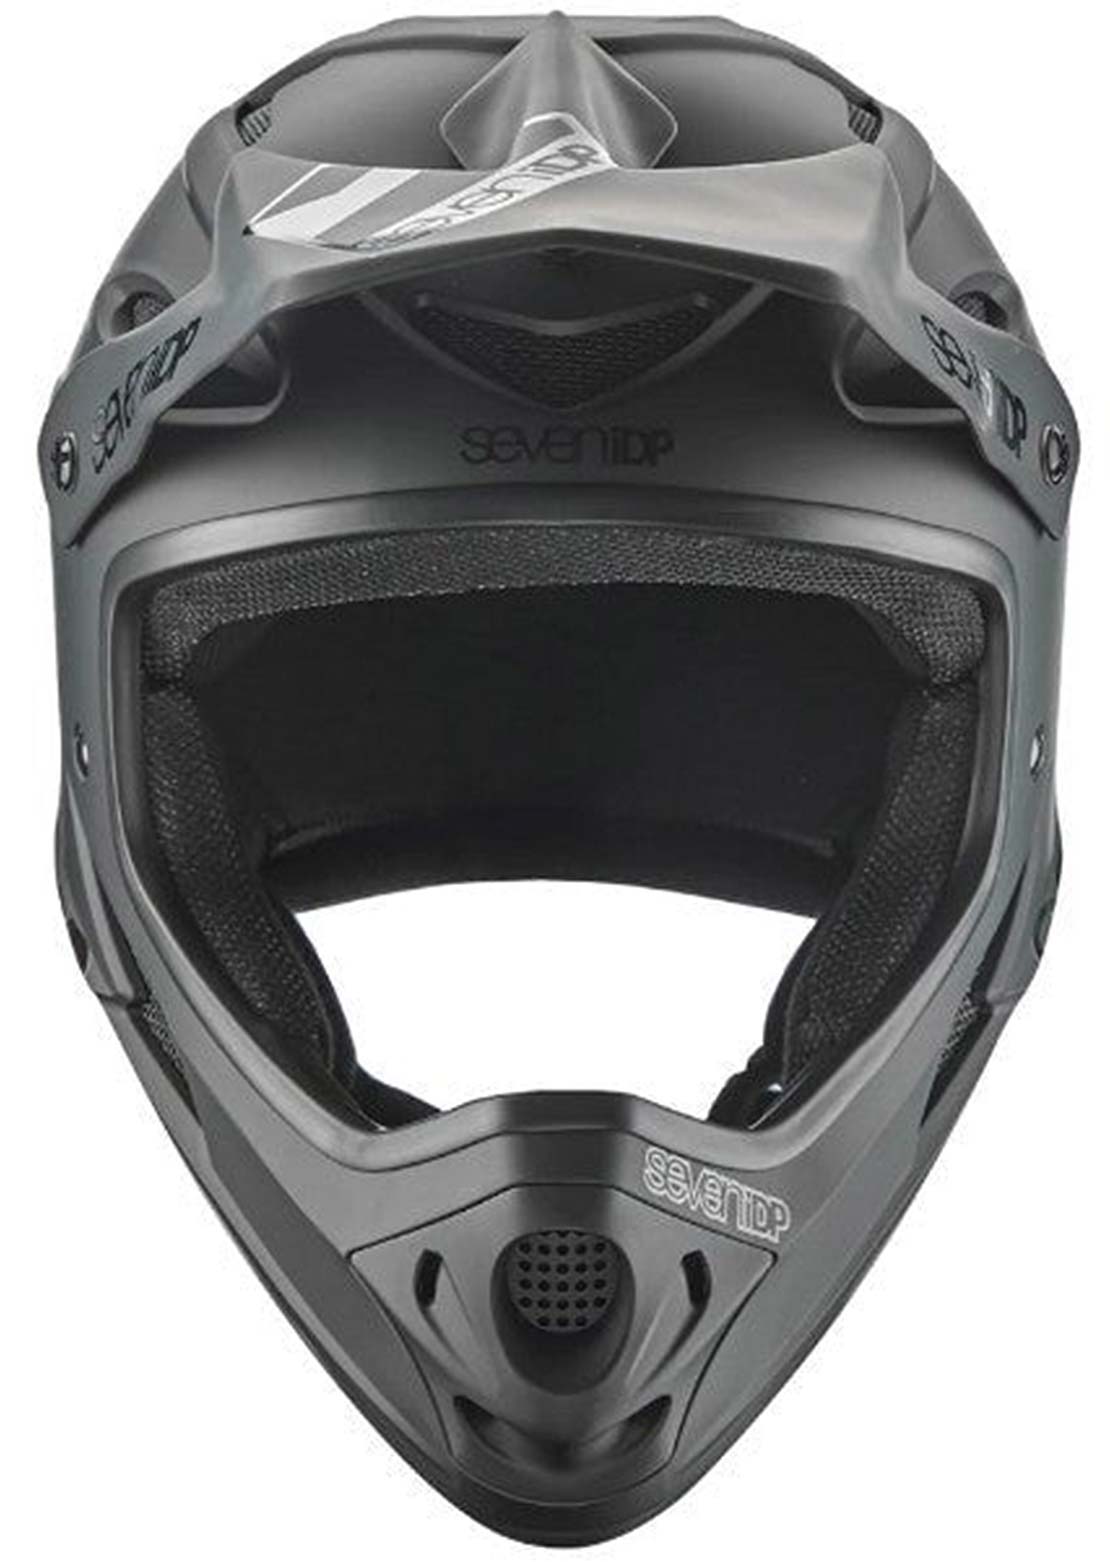 7iDP M1 Full Face 61 Downhill Helmet - 62cm Matte Black/Gloss Black